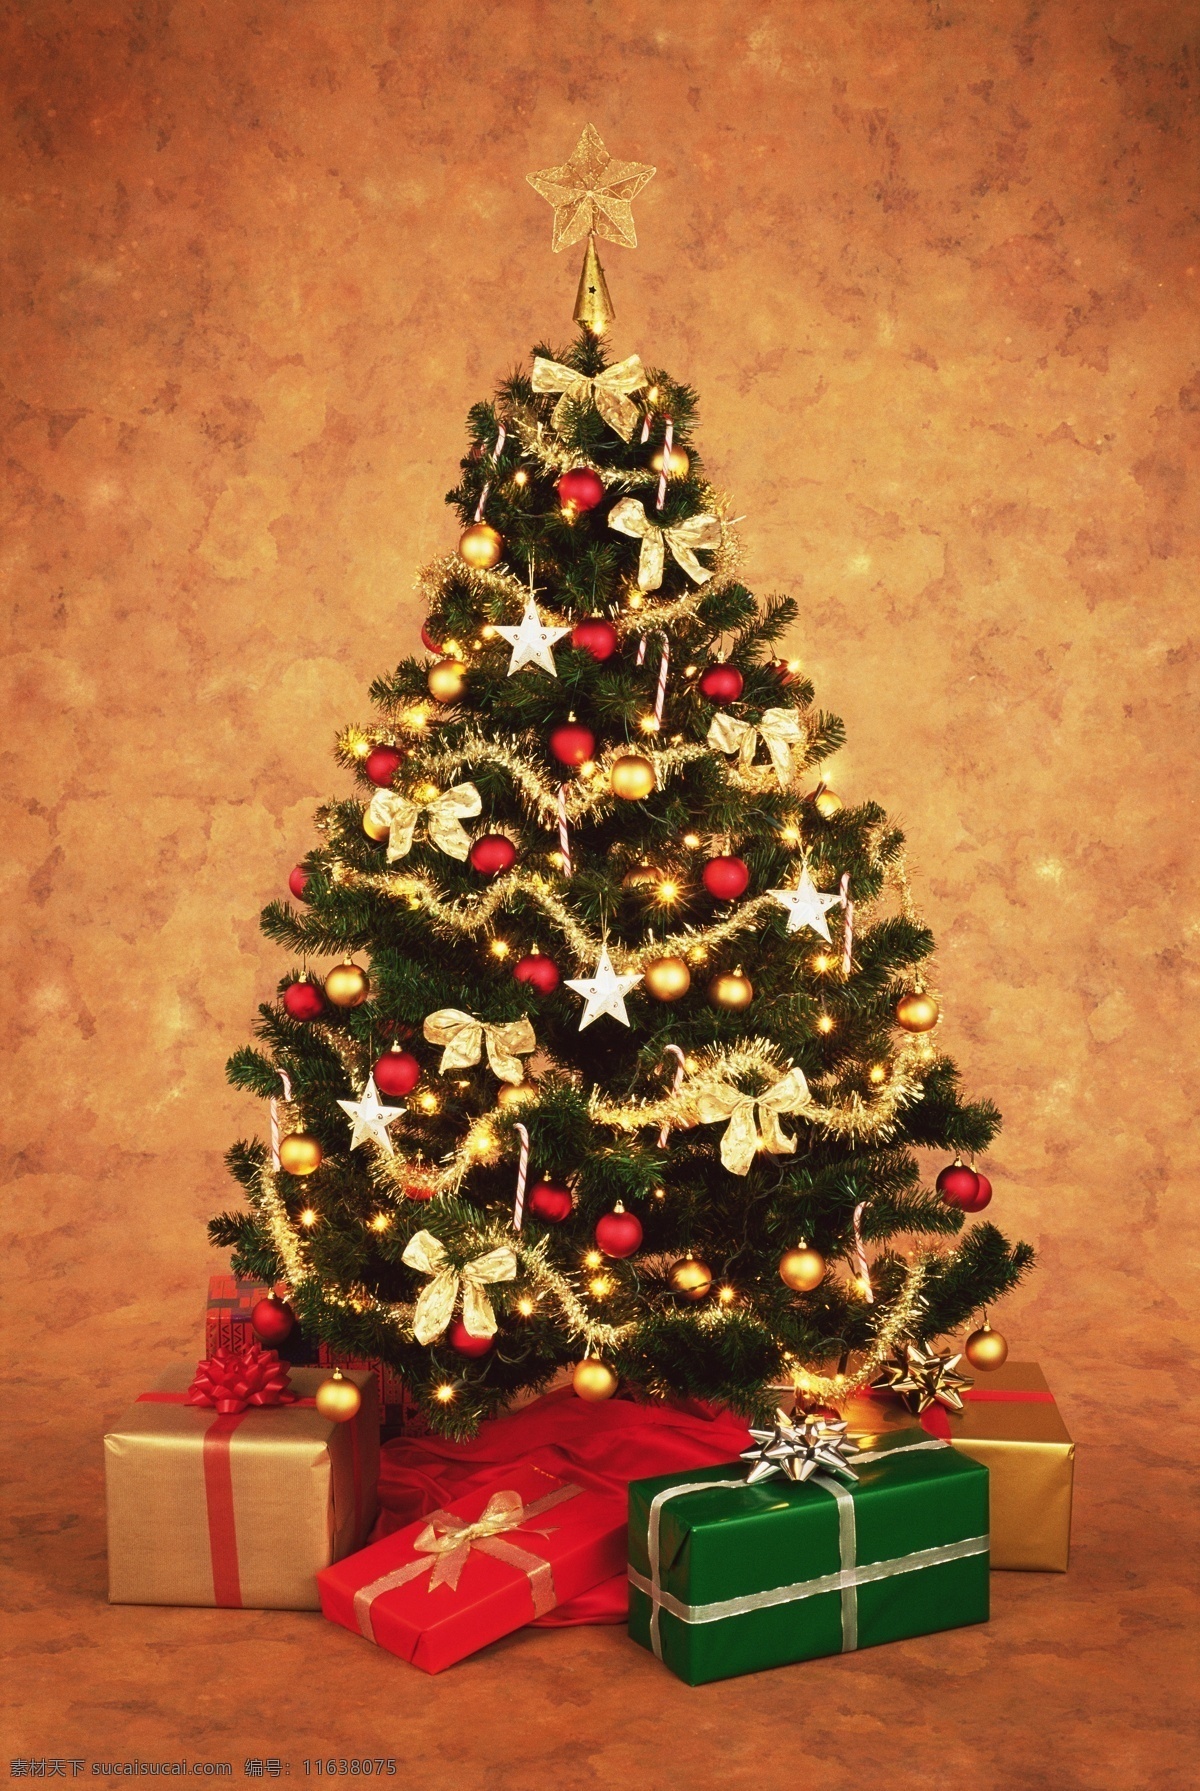 圣诞树 圣诞 礼物 圣诞节 喜庆 节日素材 新年 圣诞礼物 礼包 节日庆典 生活百科